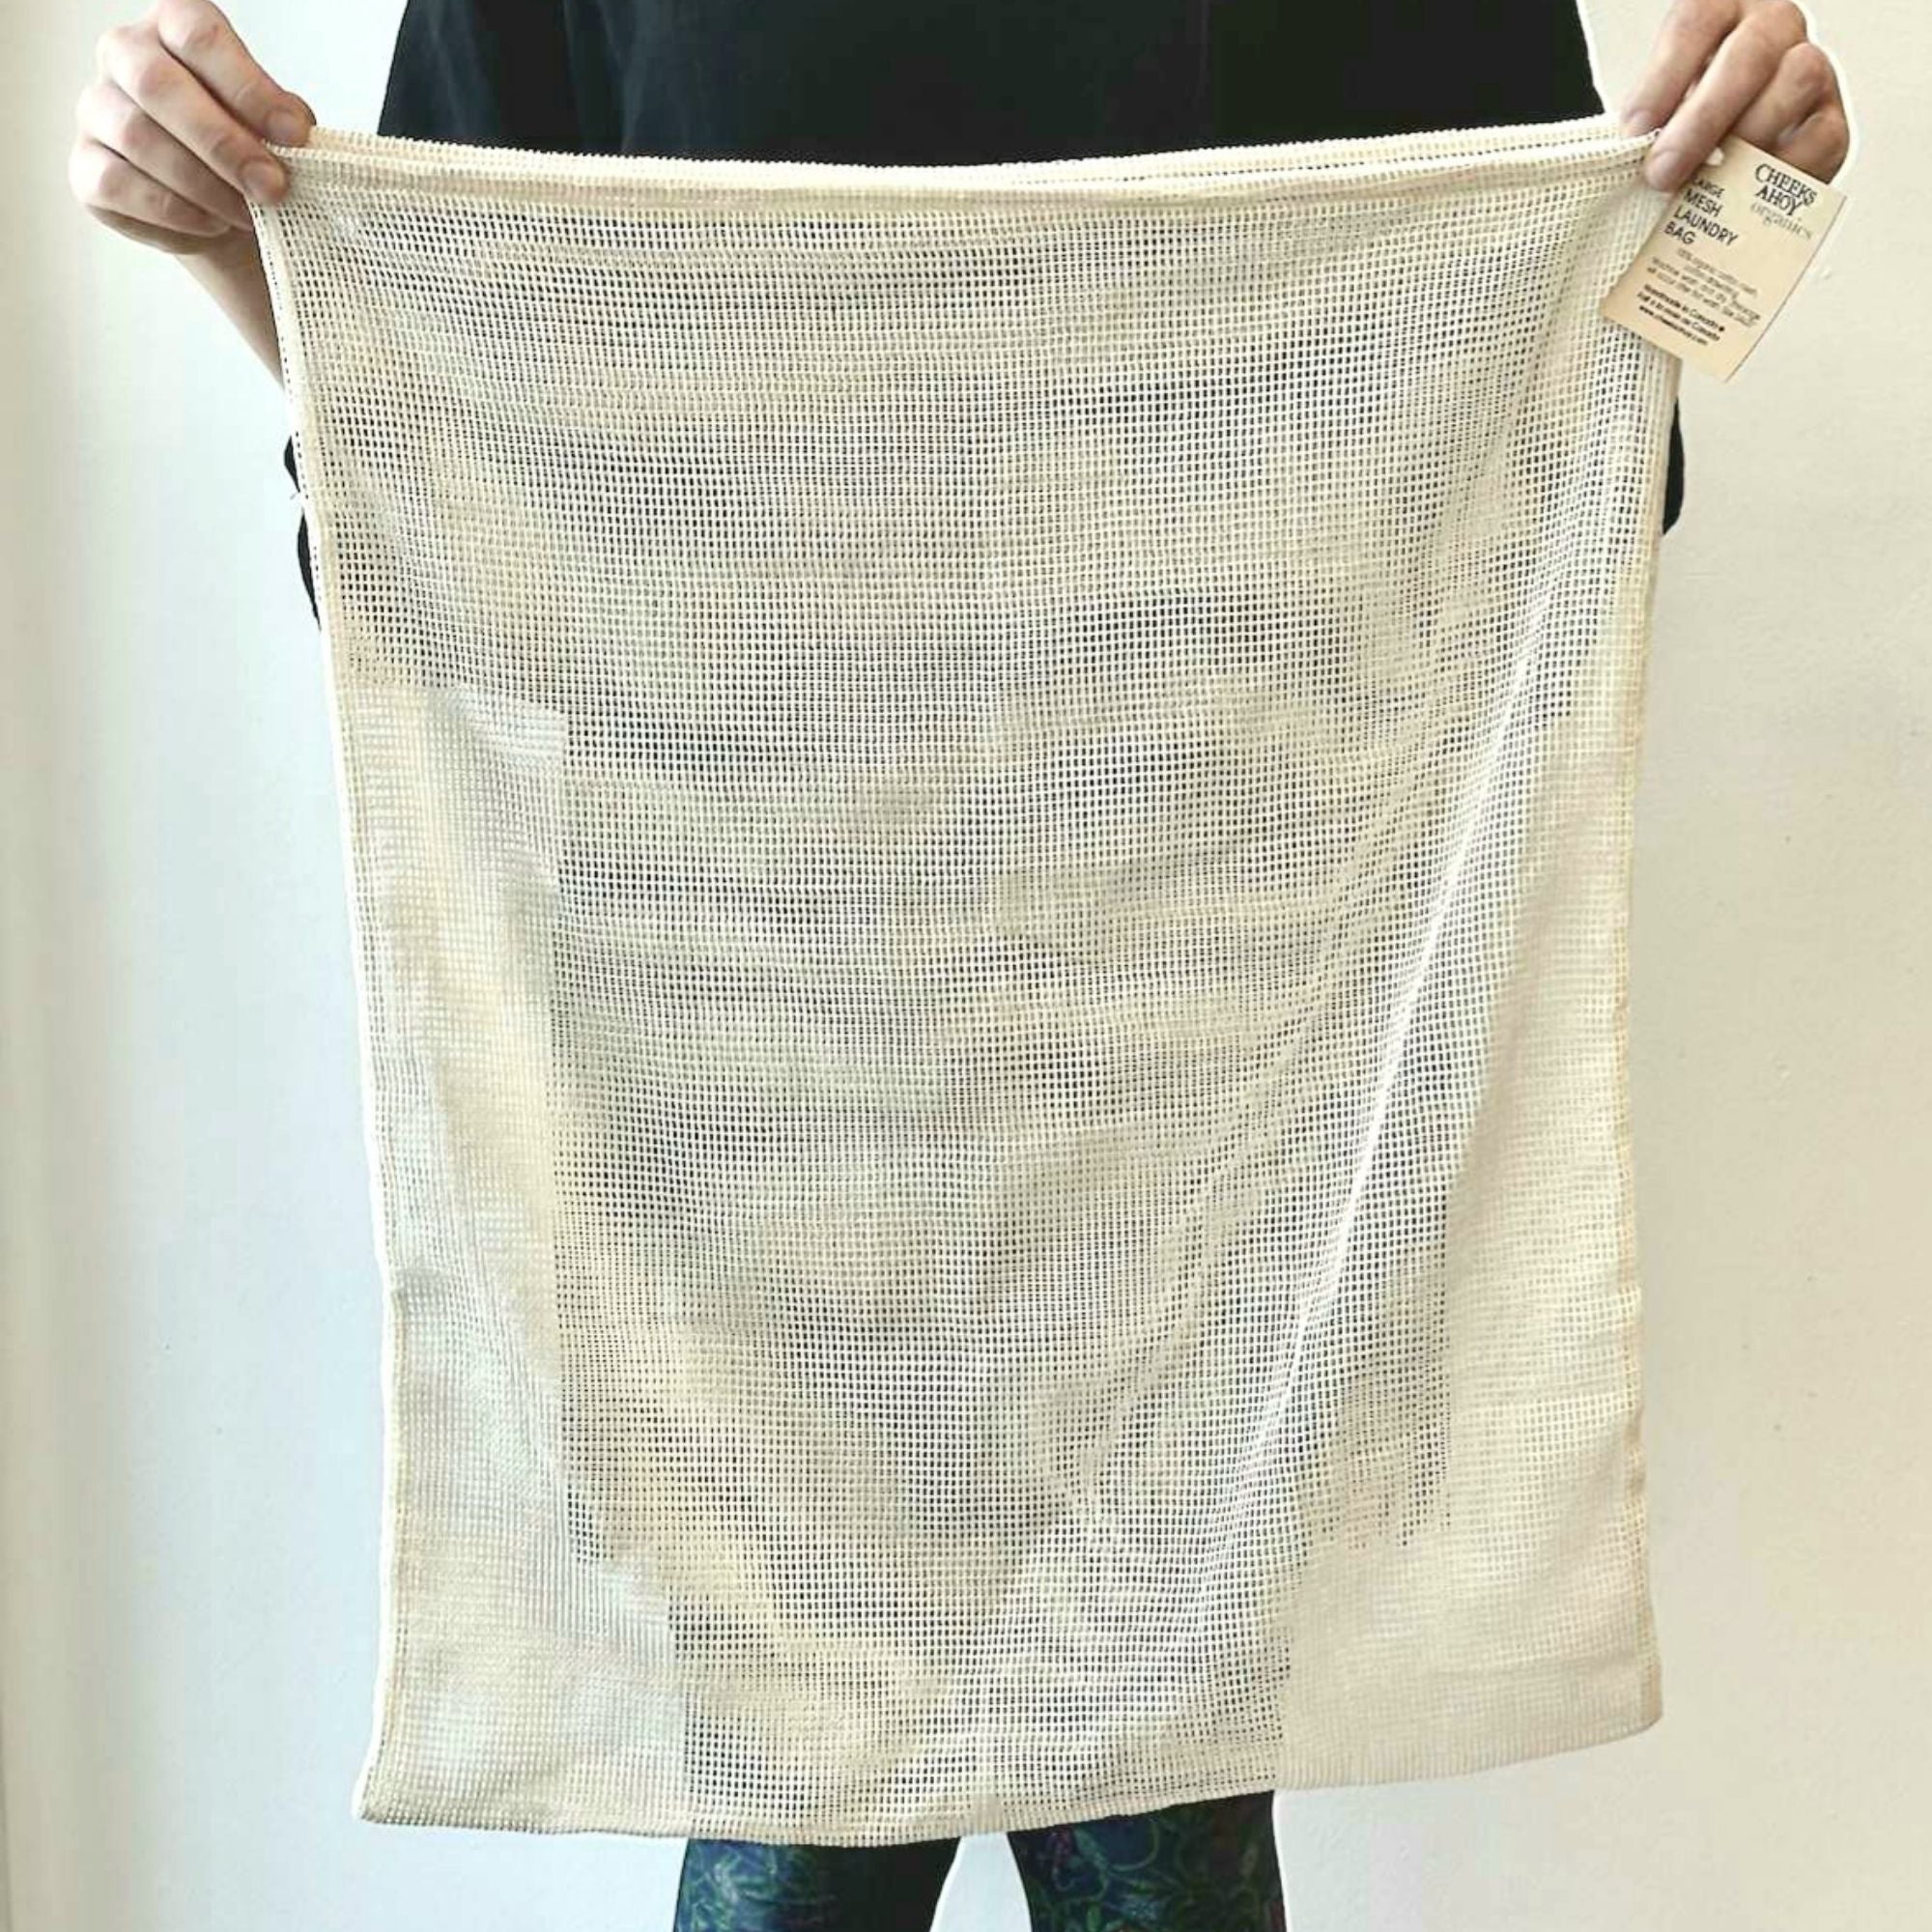 Mesh Laundry Bags for Delicates 2 Pcs2 X-Large Size India | Ubuy